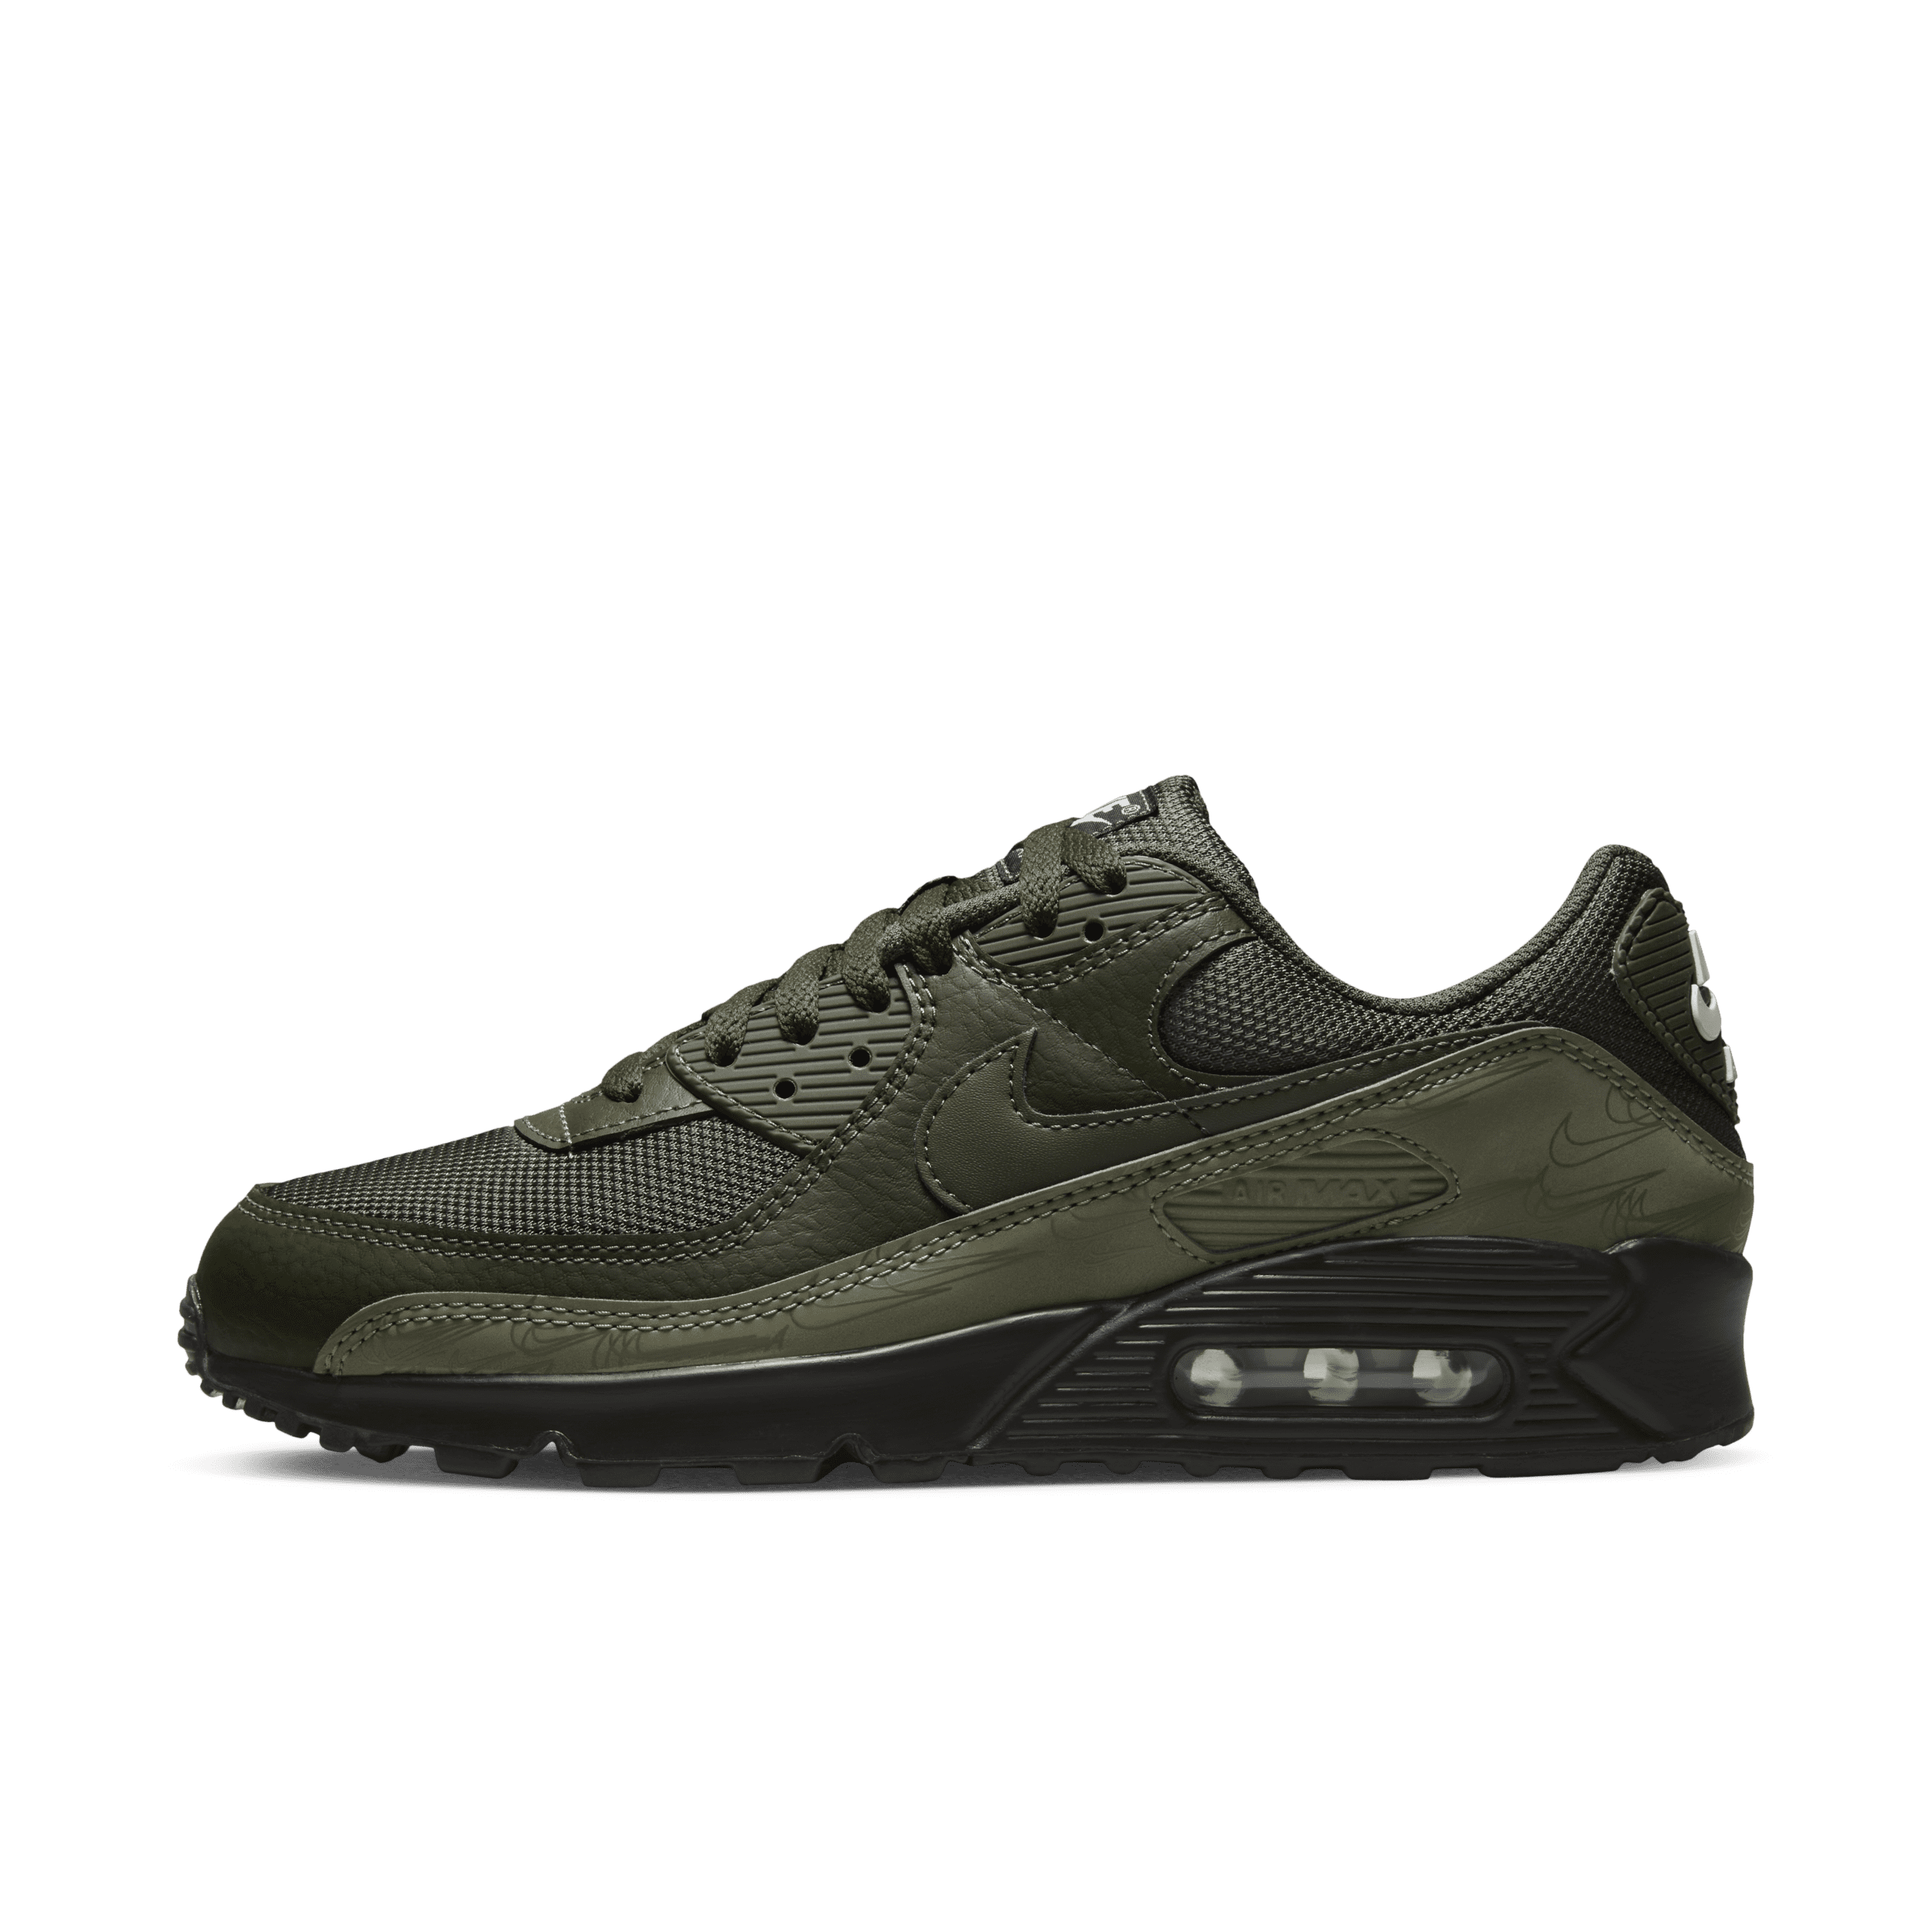 Nike Air Max 90-sko til mænd - grøn